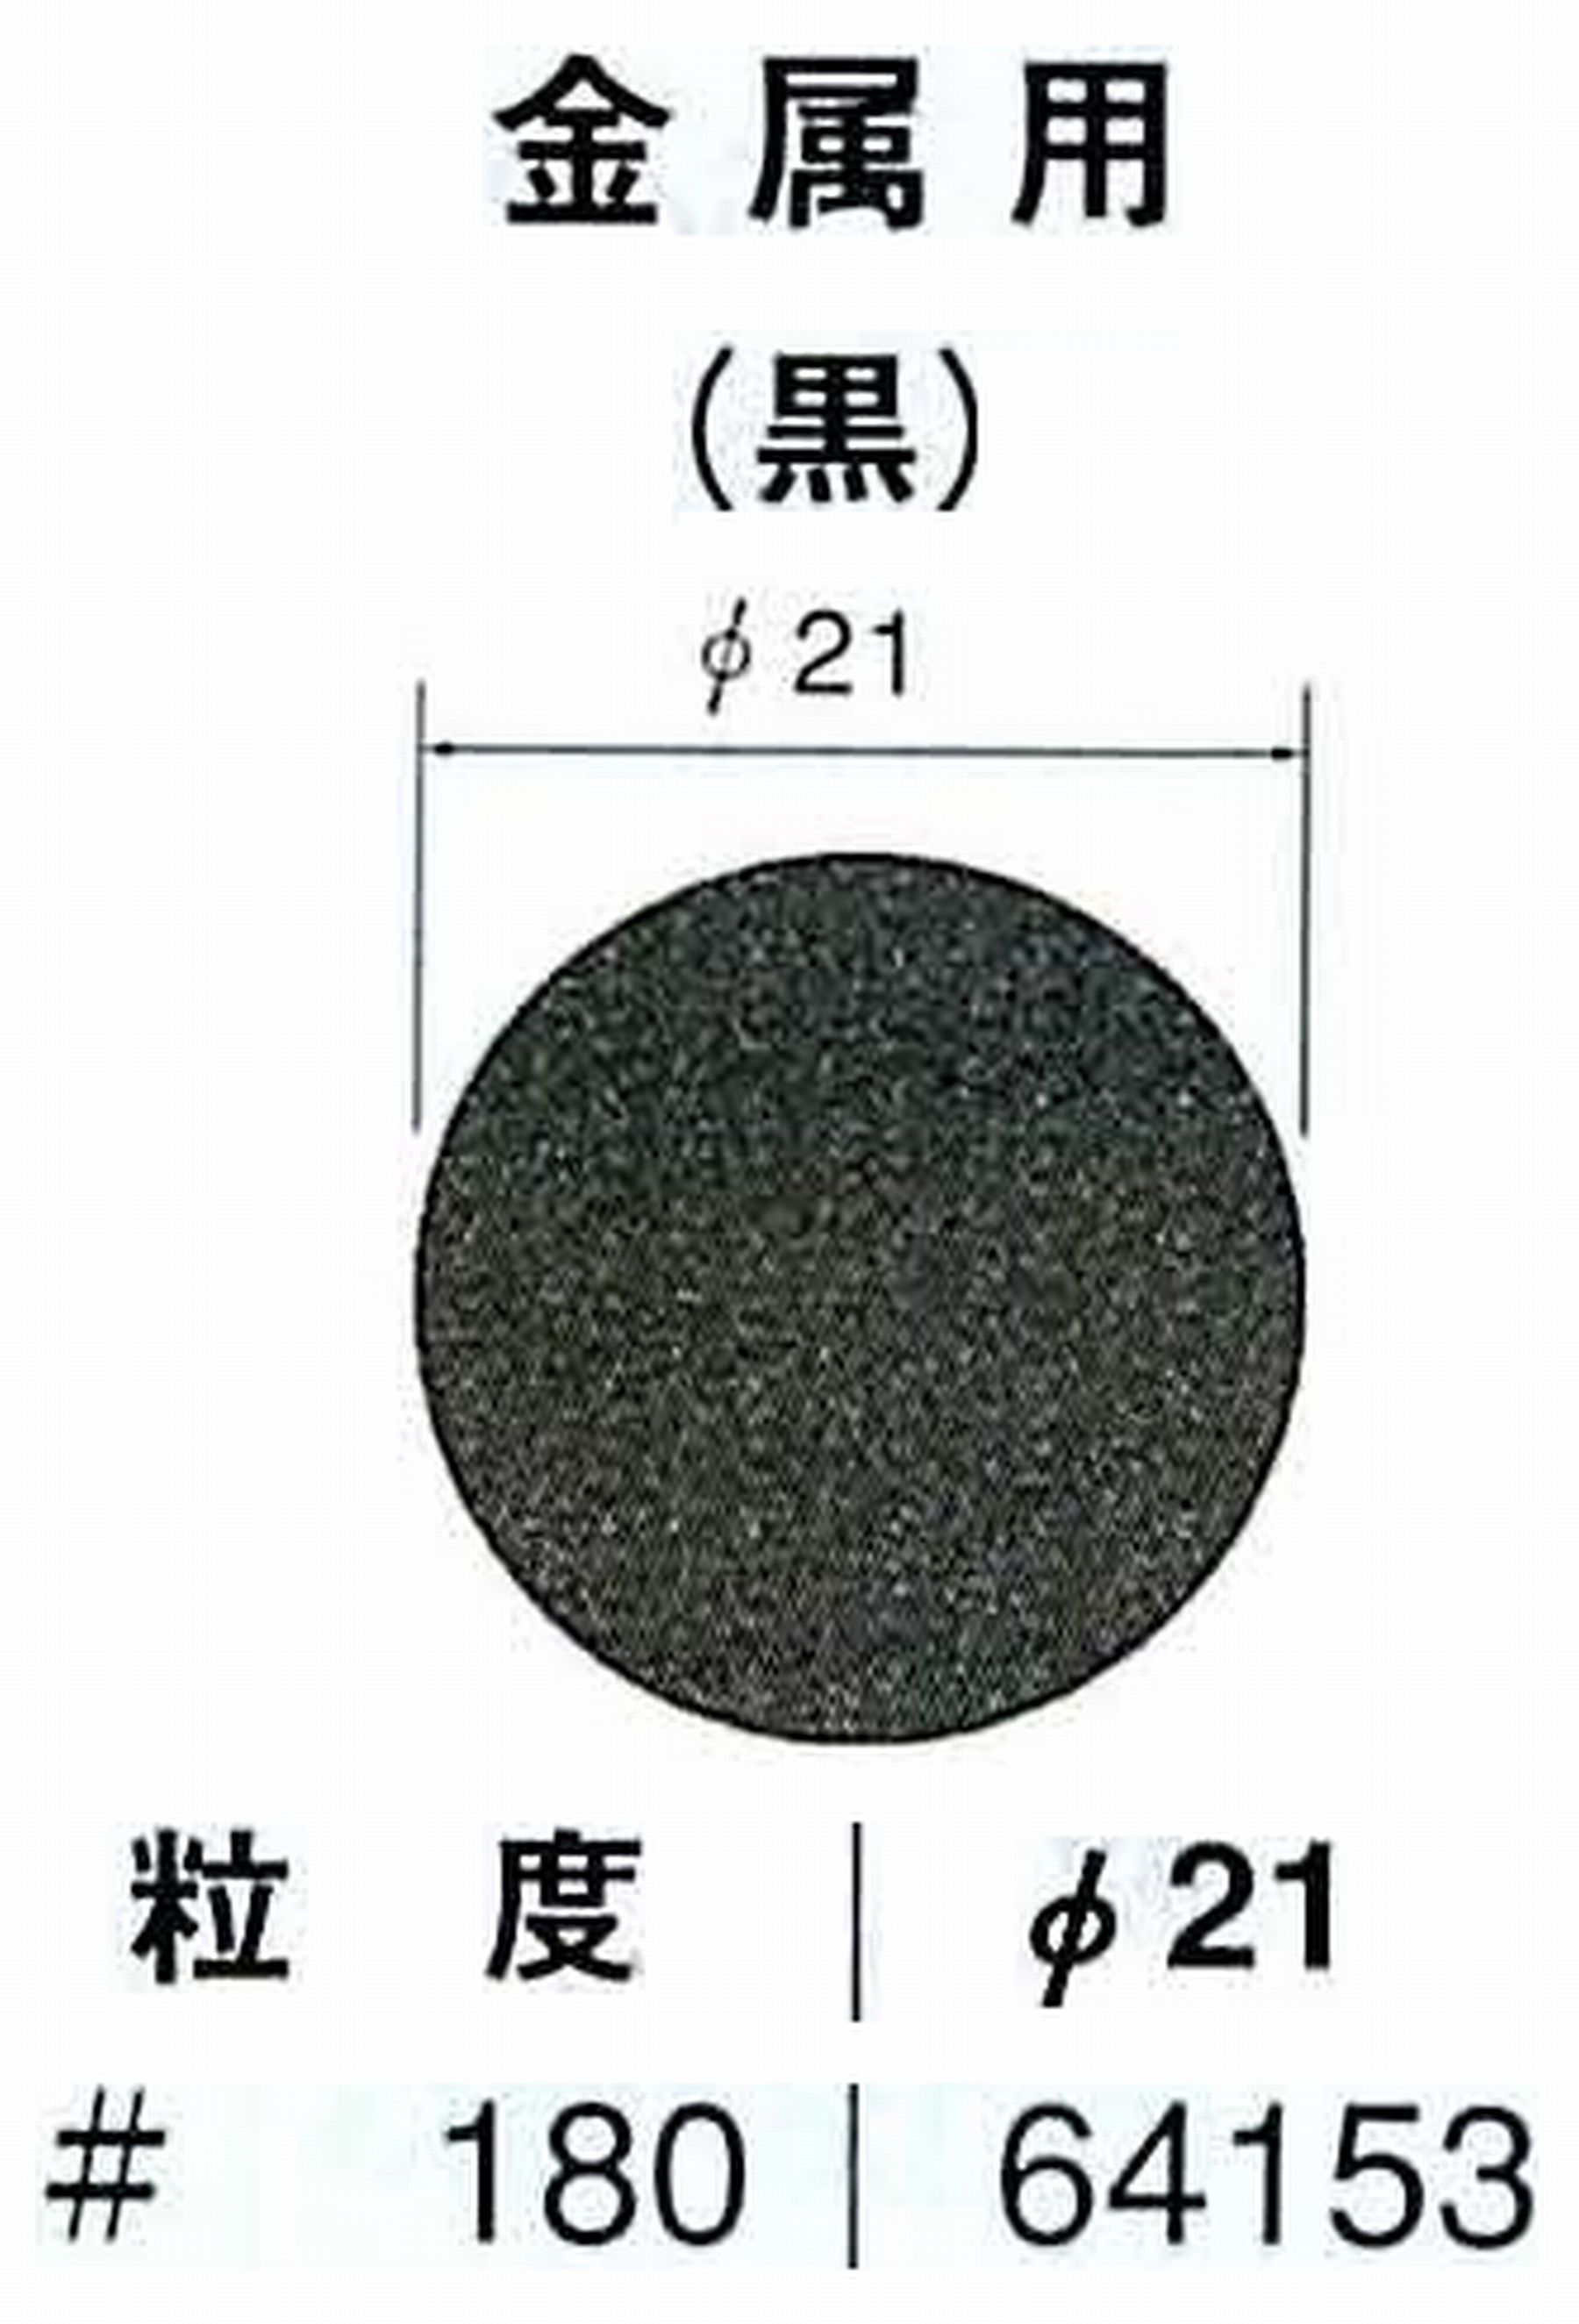 ナカニシ/NAKANISHI アングルグラインダ(電動・エアー) アングルアタッチメント専用工具 サンドペーパーディスク(紙基材タイプ)裏面のり処理 64153